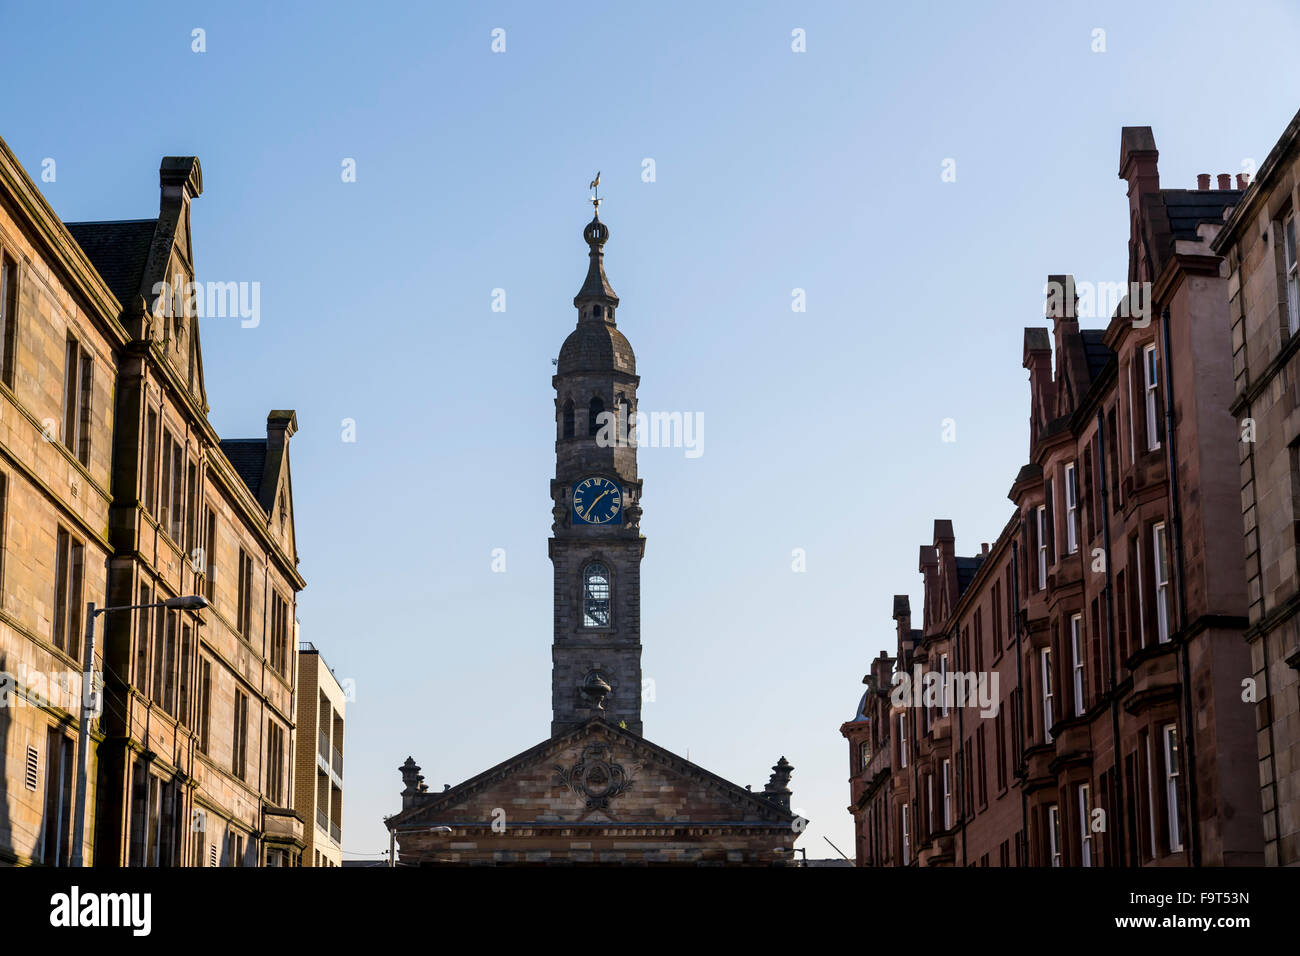 St Andrews en el campanario de la plaza de la iglesia, Glasgow, Escocia, Reino Unido Foto de stock